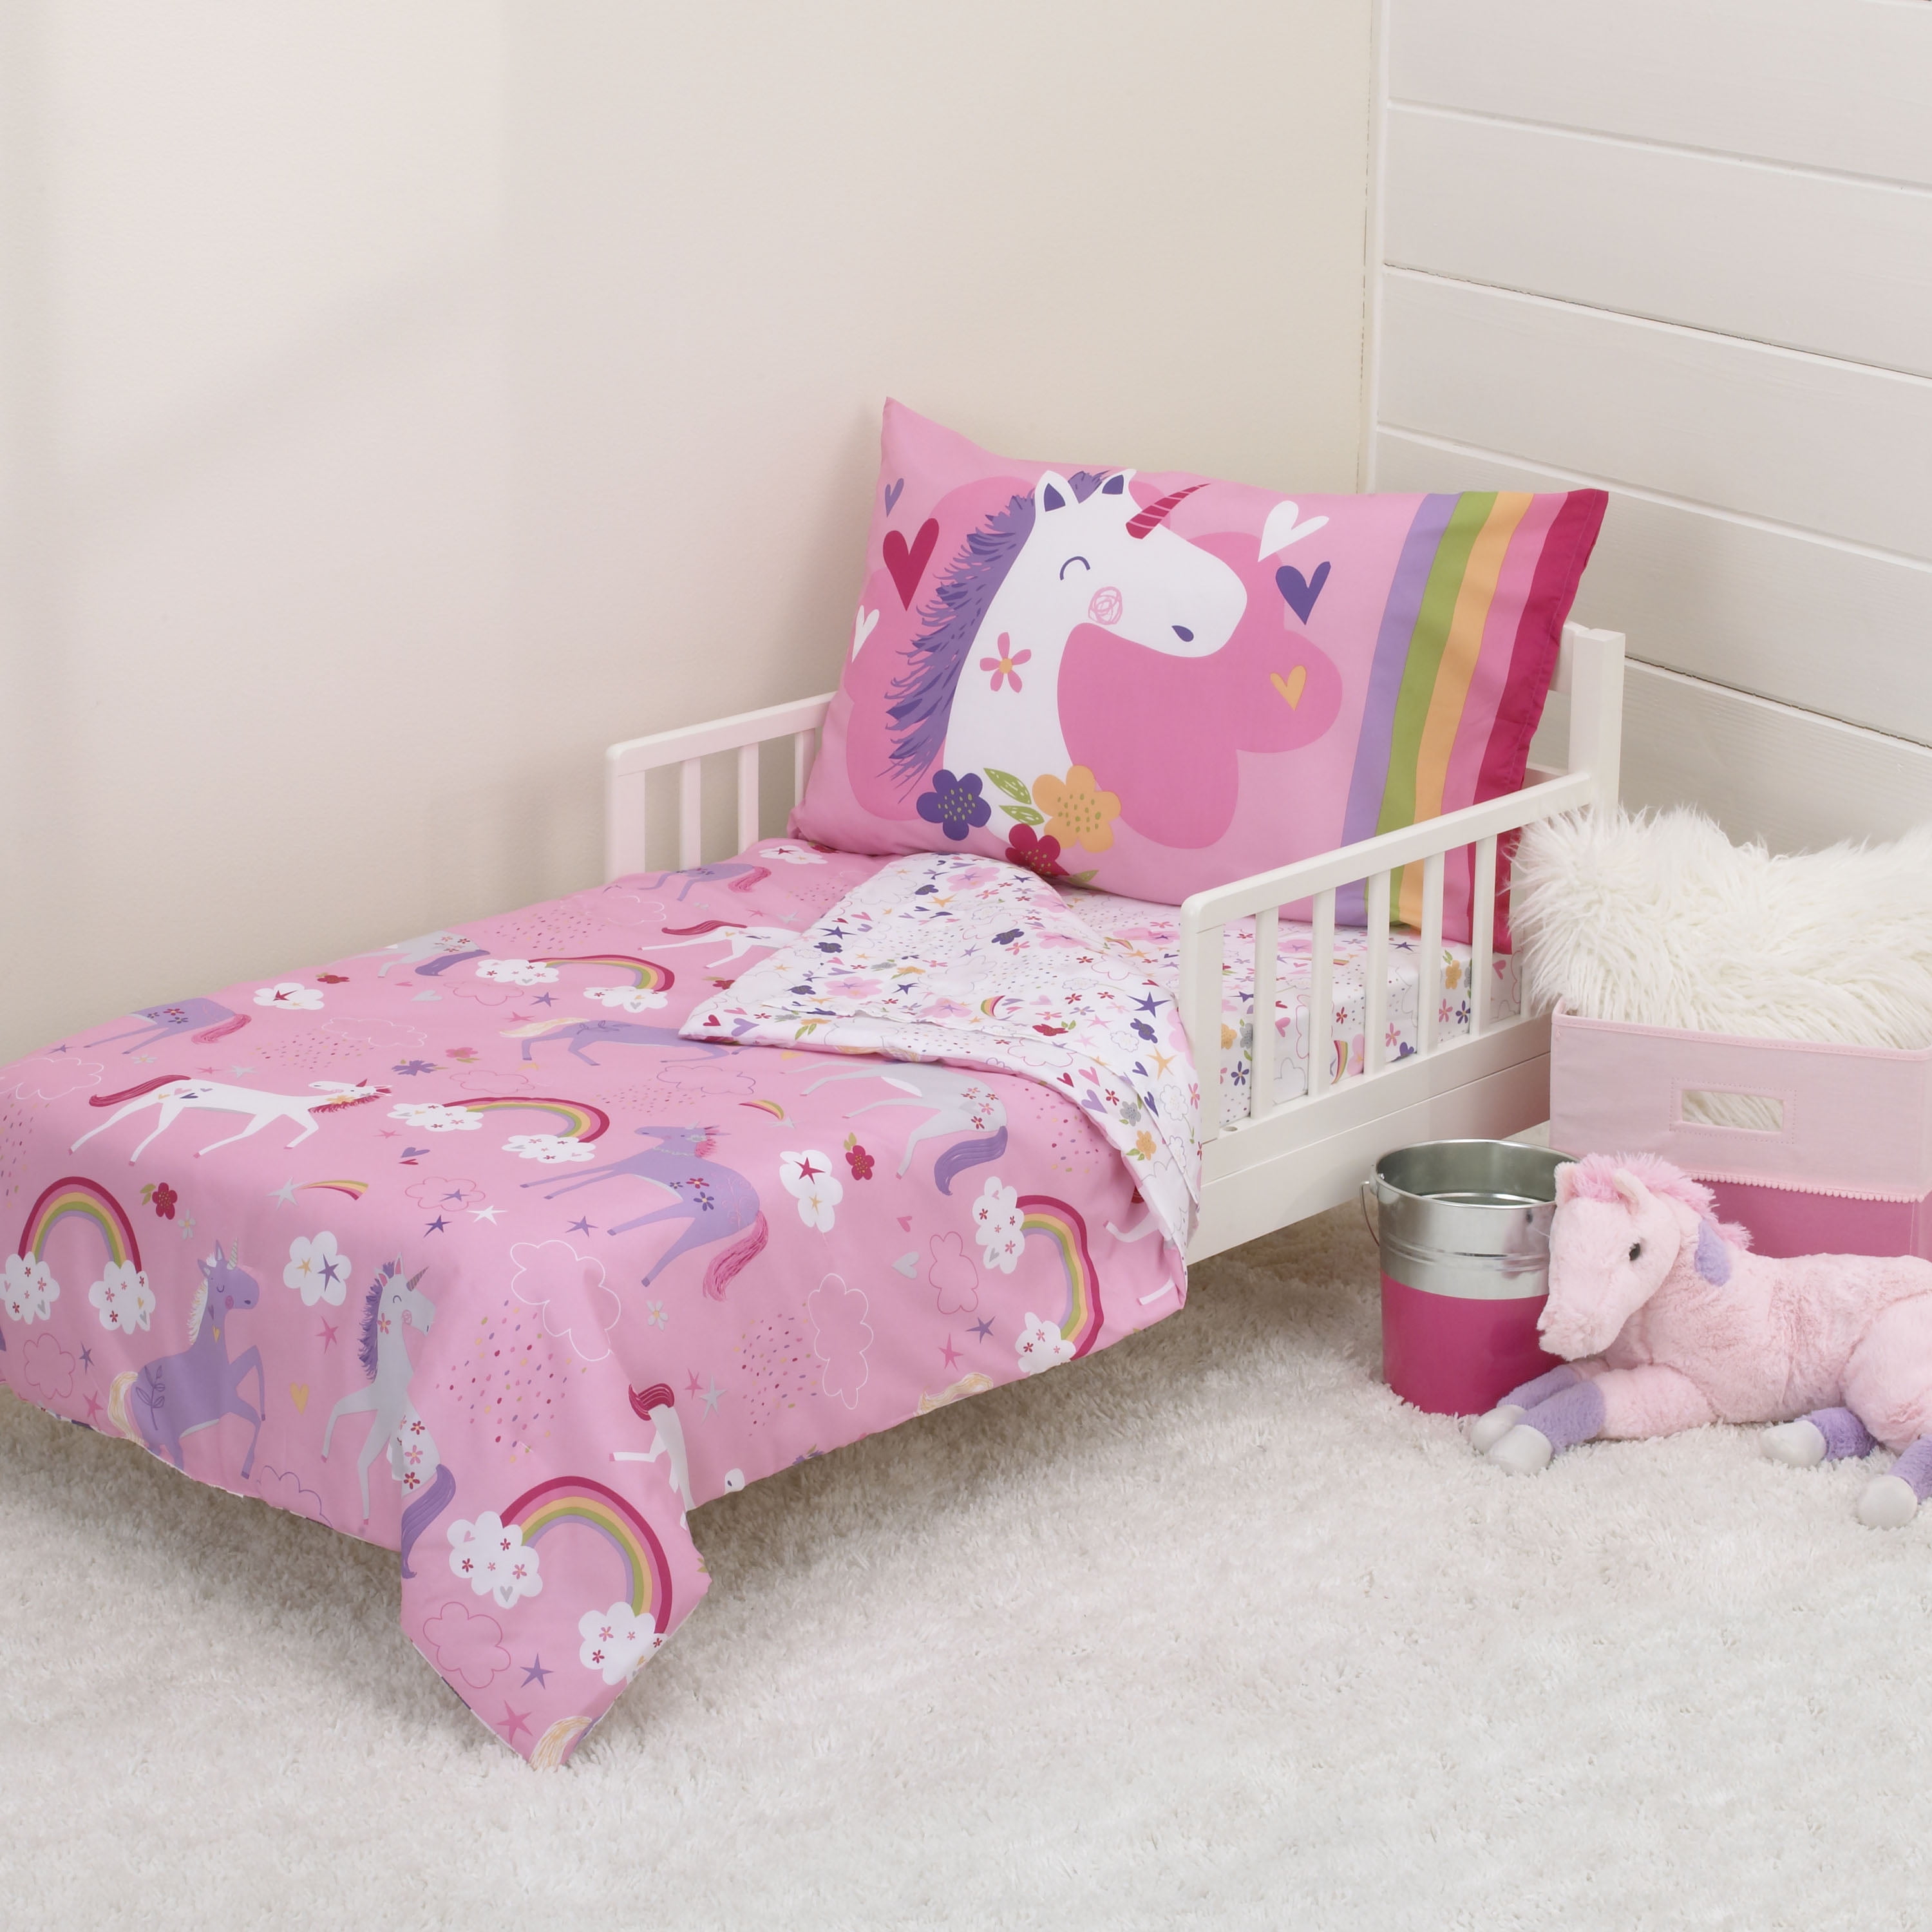 Parent's Choice 4Piece Toddler Bedding Set, Pink, Unicorn